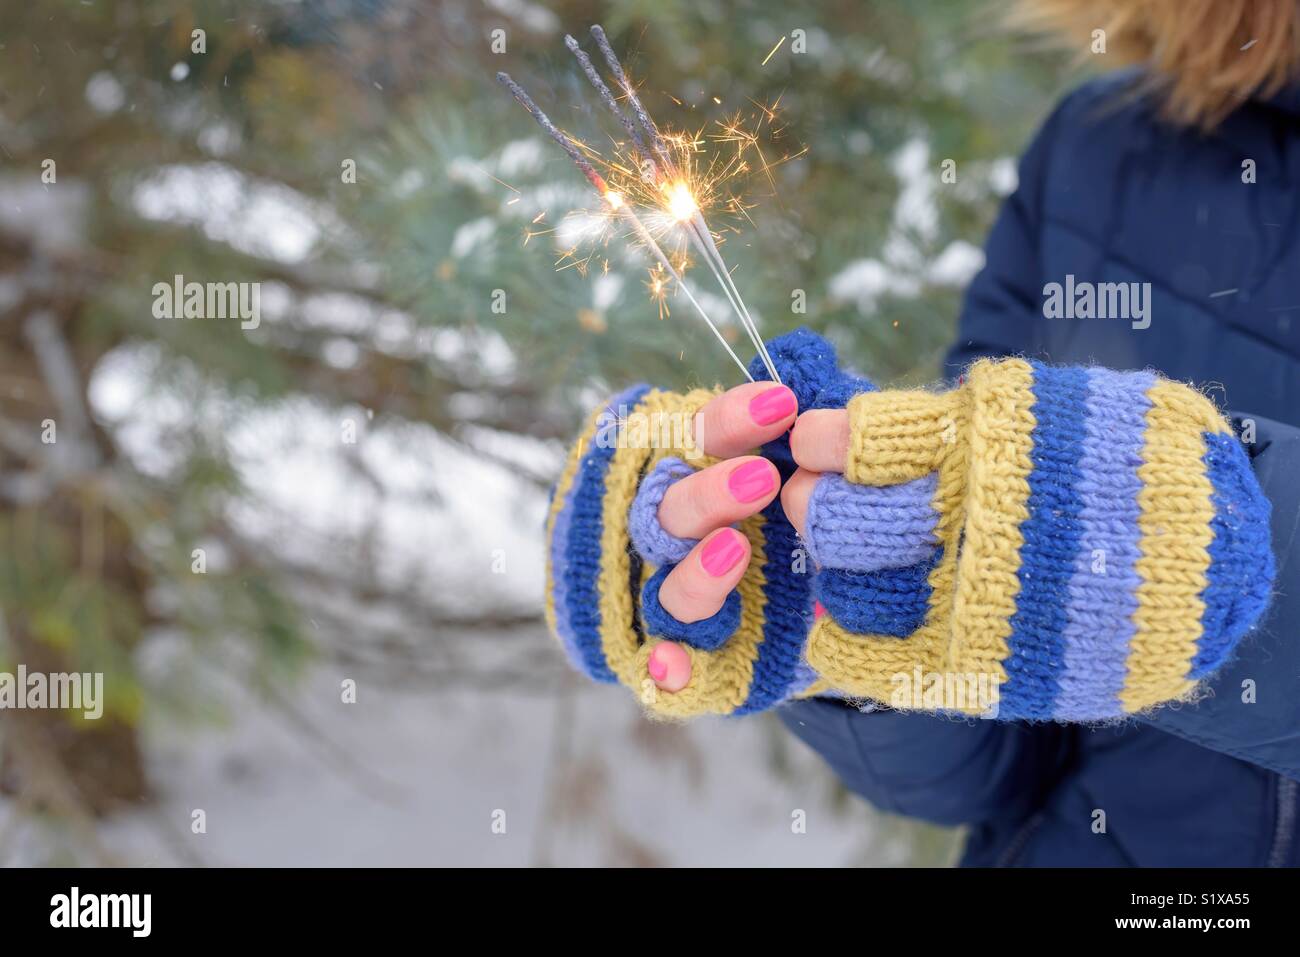 Frau in bunten Blau und Gelb stricken Handschuhe holding Wunderkerzen an einem Wintertag Stockfoto